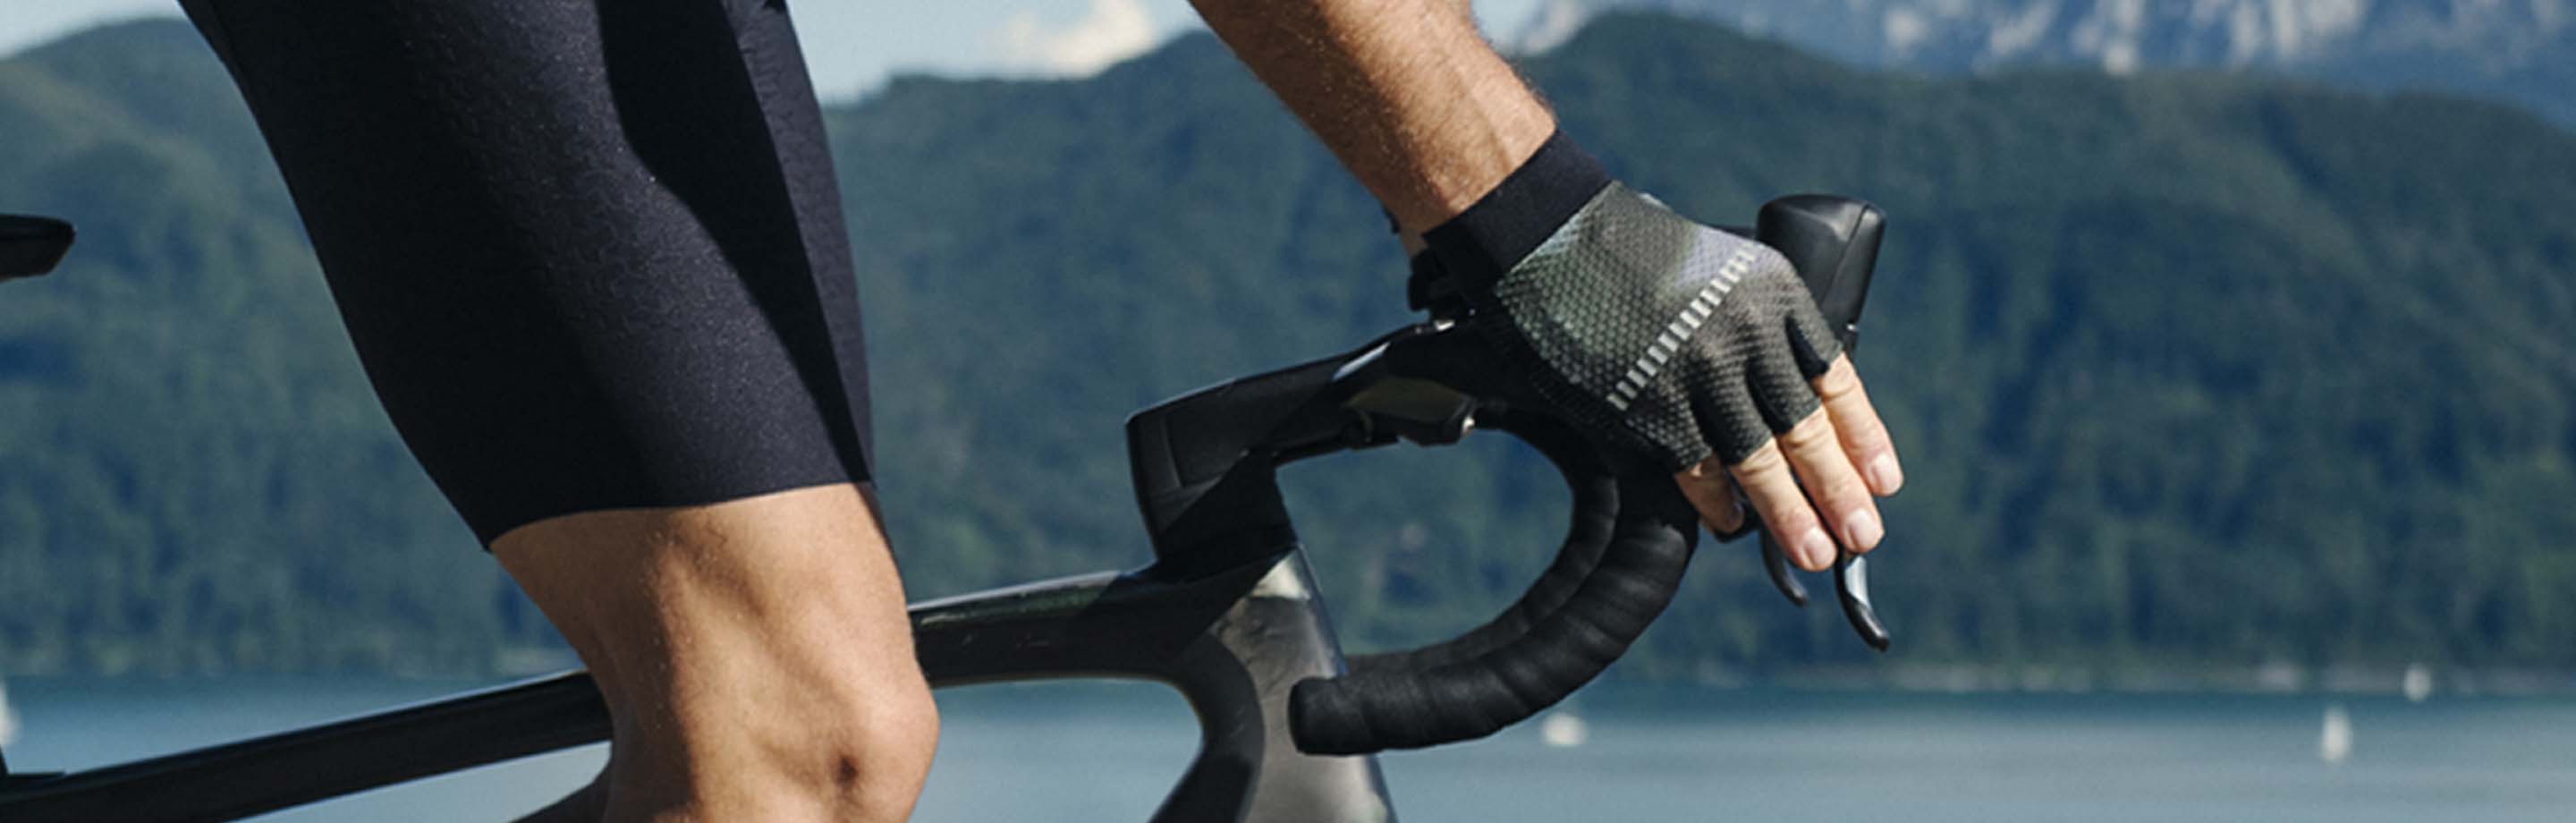 Roeckl Sports – Premium Handschuhe fürs Rad, Langlaufen, Skiabenteuer, Running und Outdoor